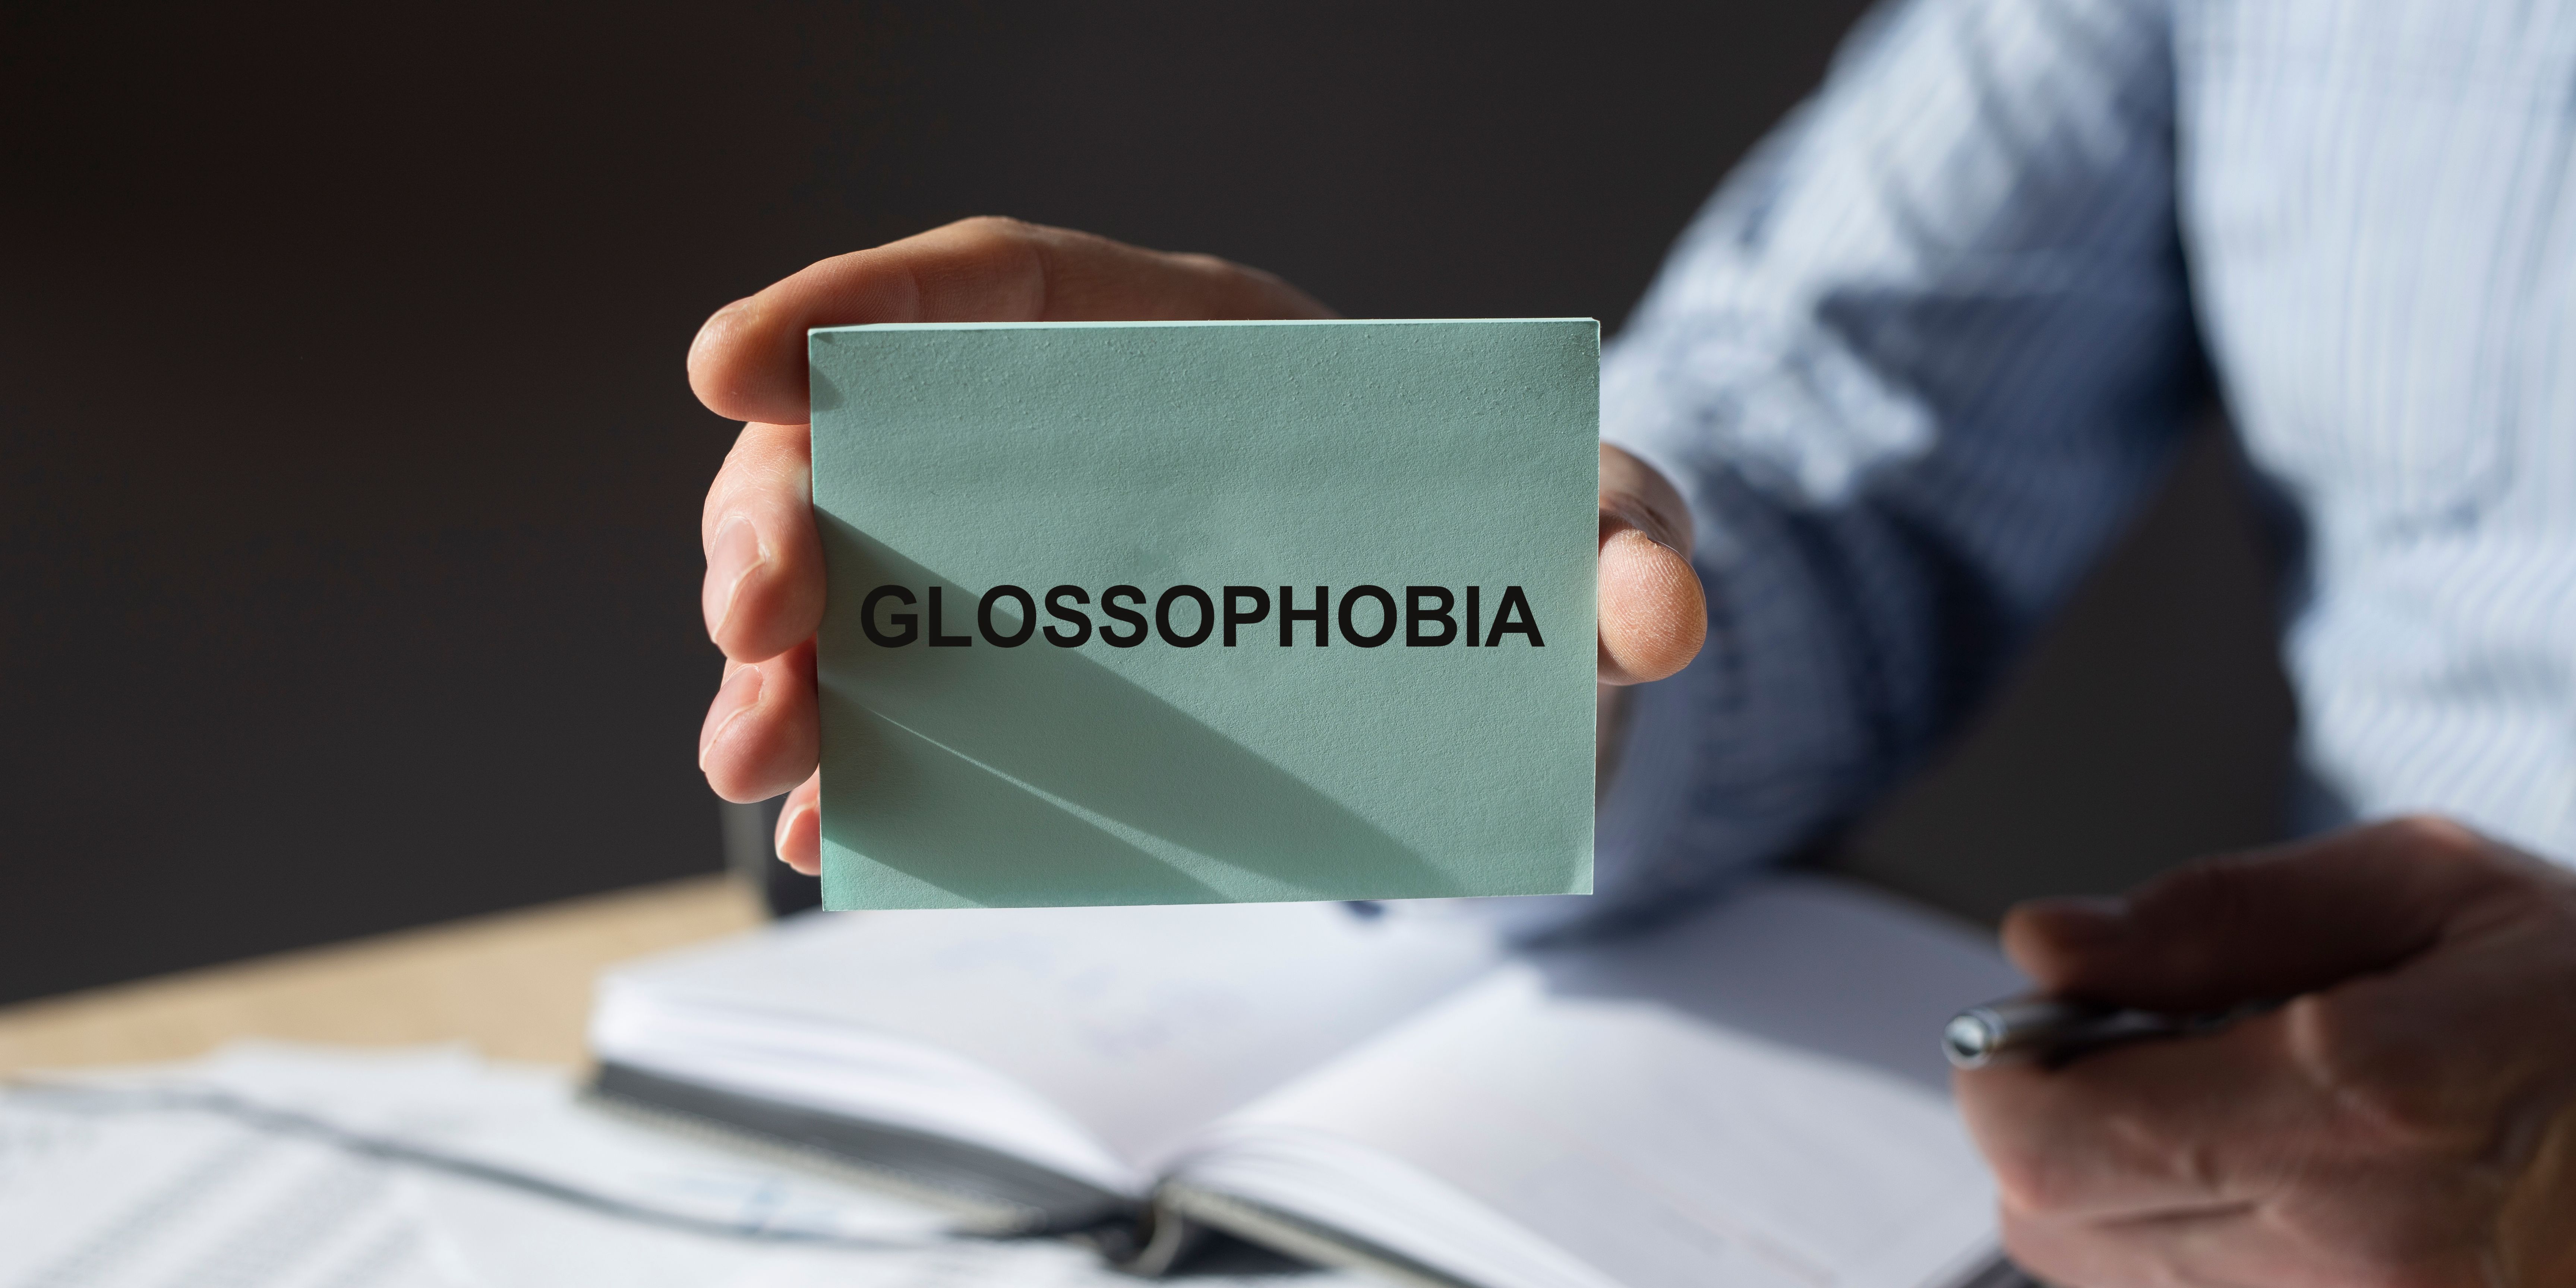 Takut Berbicara dengan Orang Baru - Mengatasi Glossophobia pada Wanita